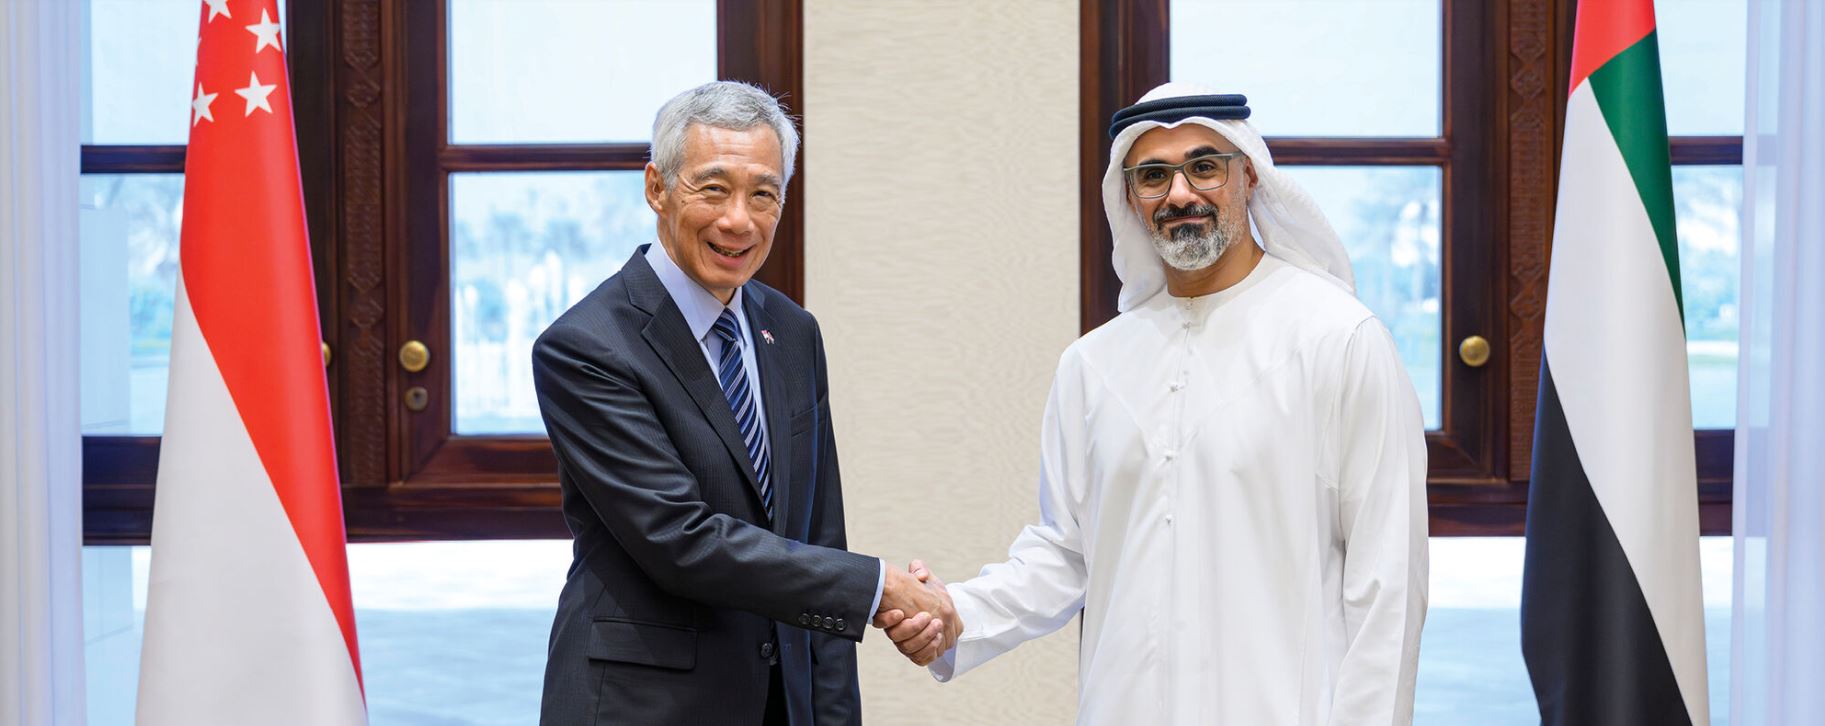 خالد بن محمد بن زايد يلتقي رئيس وزراء جمهورية سنغافورة ويبحثان سُبل مواصلة تعزيز العلاقات الثنائية